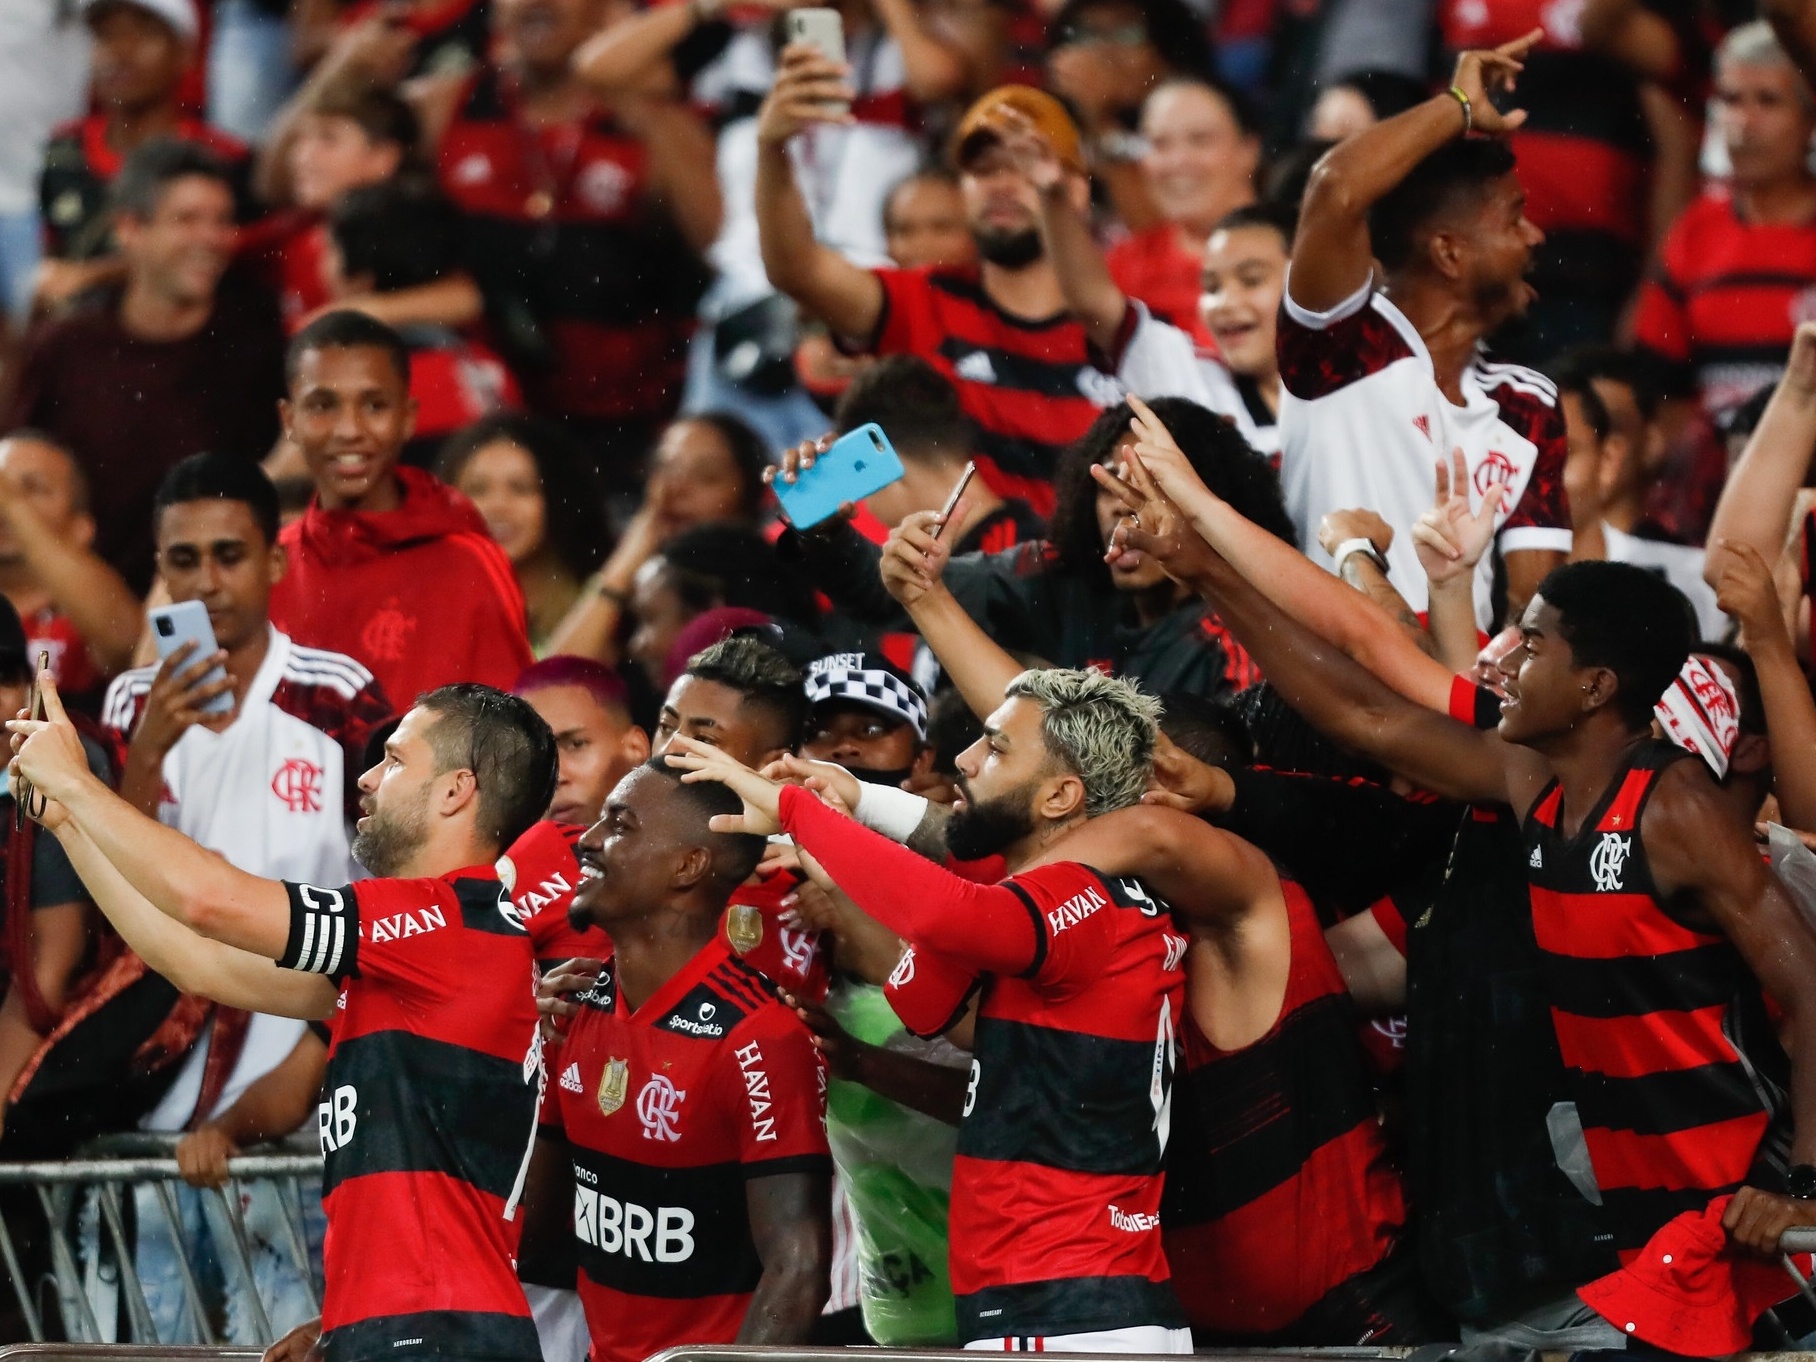 Jogador do Flamengo: conheça o elenco atual - Blog Espaço Rubro Negro